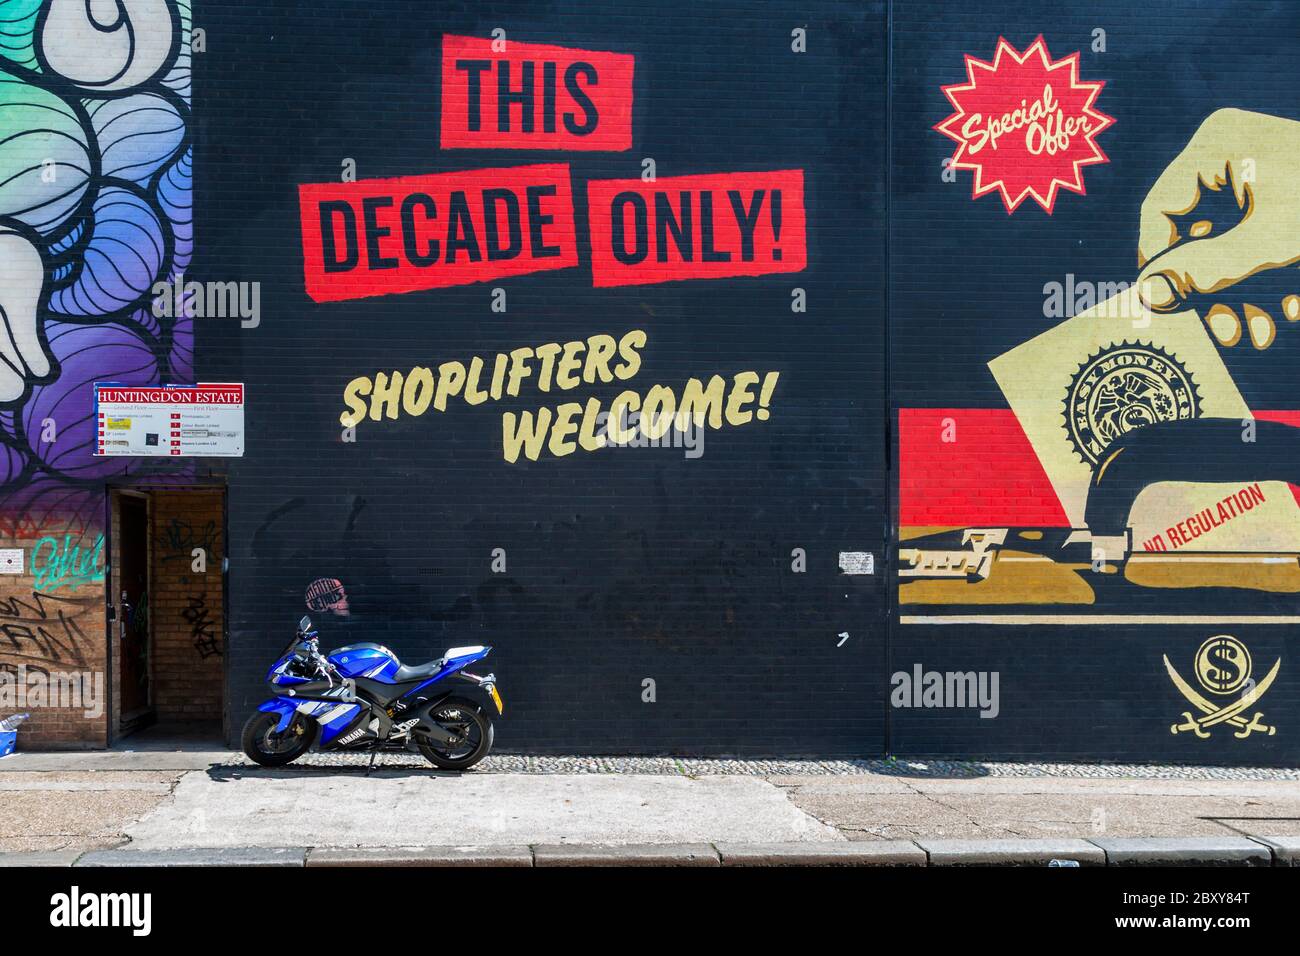 Solo questo decennio! Taccheggiatori Benvenuto. Street Art nel Royal Borough di Kensington e Chelsea, Inghilterra Foto Stock